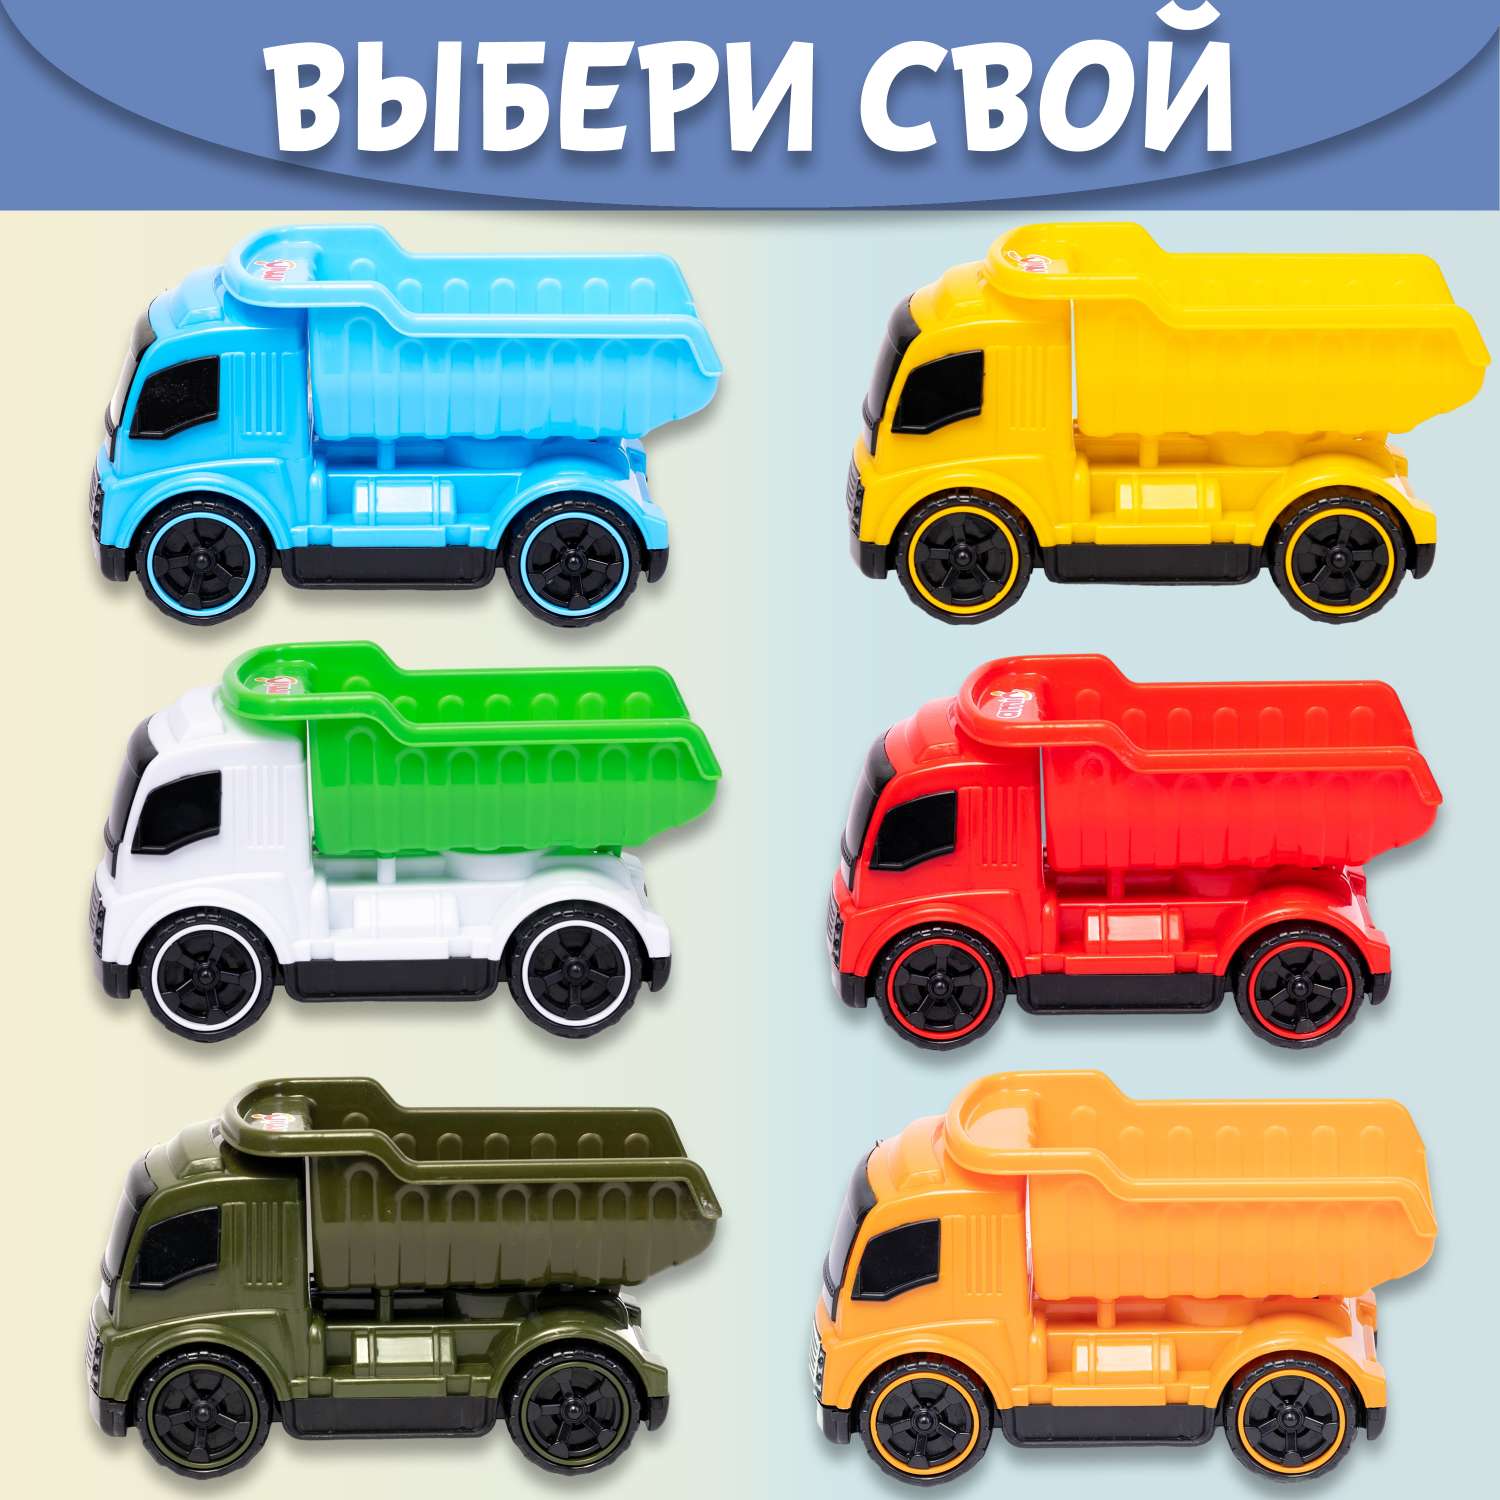 Машинка Нижегородская игрушка Самосвал голубой ктг270_г - фото 8